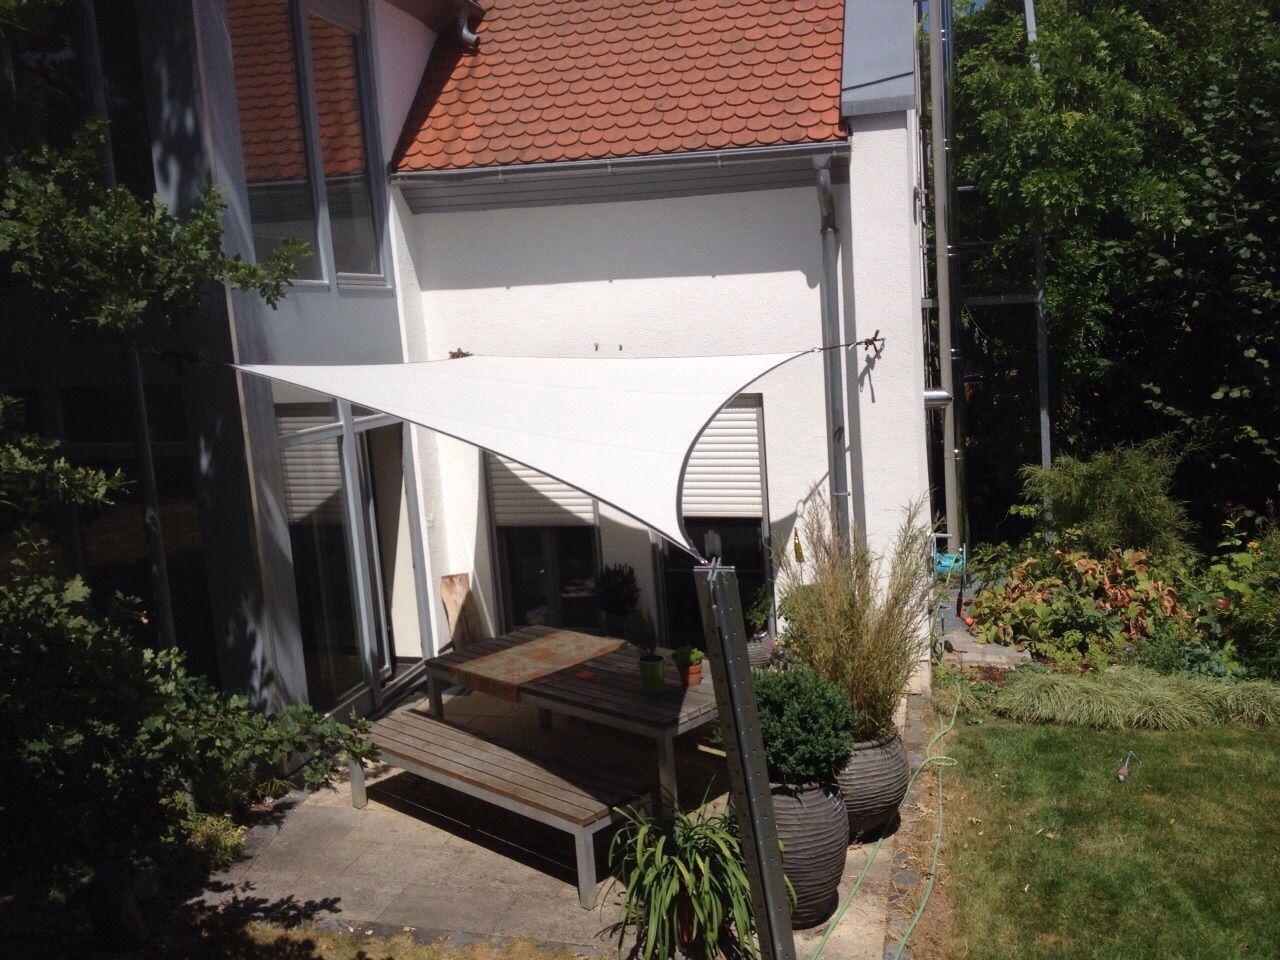 Sonnensegel - Sonnenschutz der Extraklasse, derraumhoch3 derraumhoch3 Modern balcony, veranda & terrace Accessories & decoration